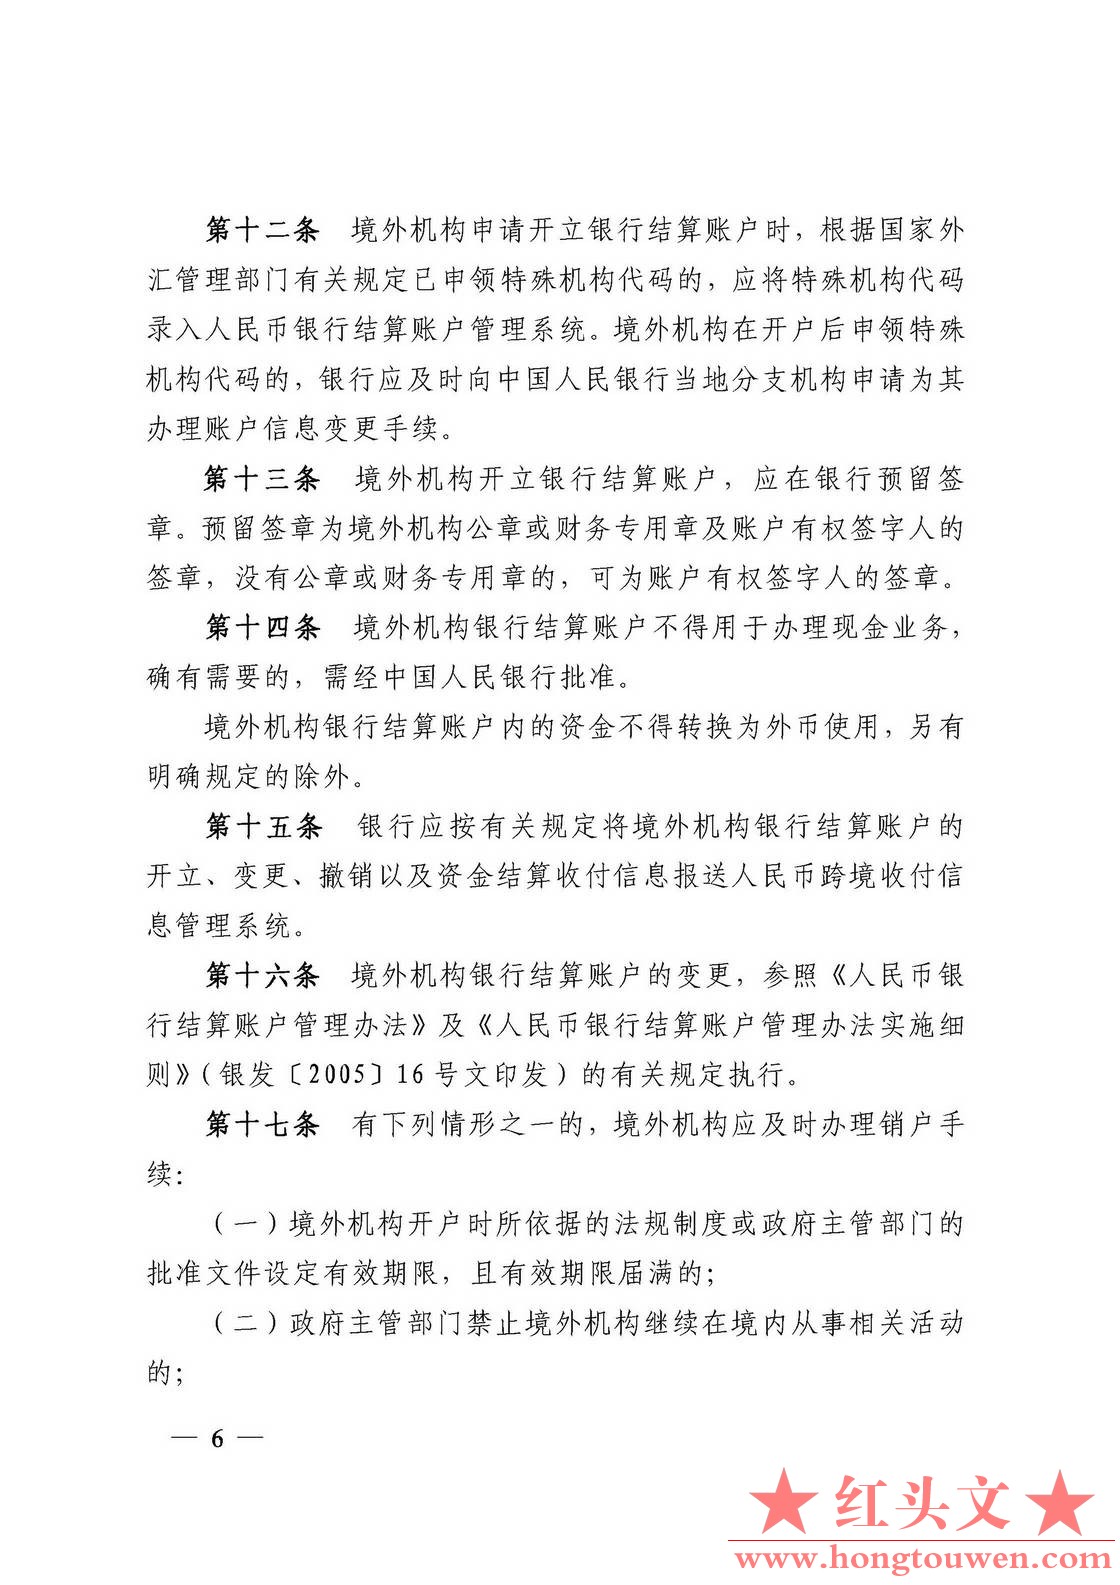 银发[2010]249号-中国人民银行关于印发《境外机构人民币银行结算账户管理办法》的通知.jpg